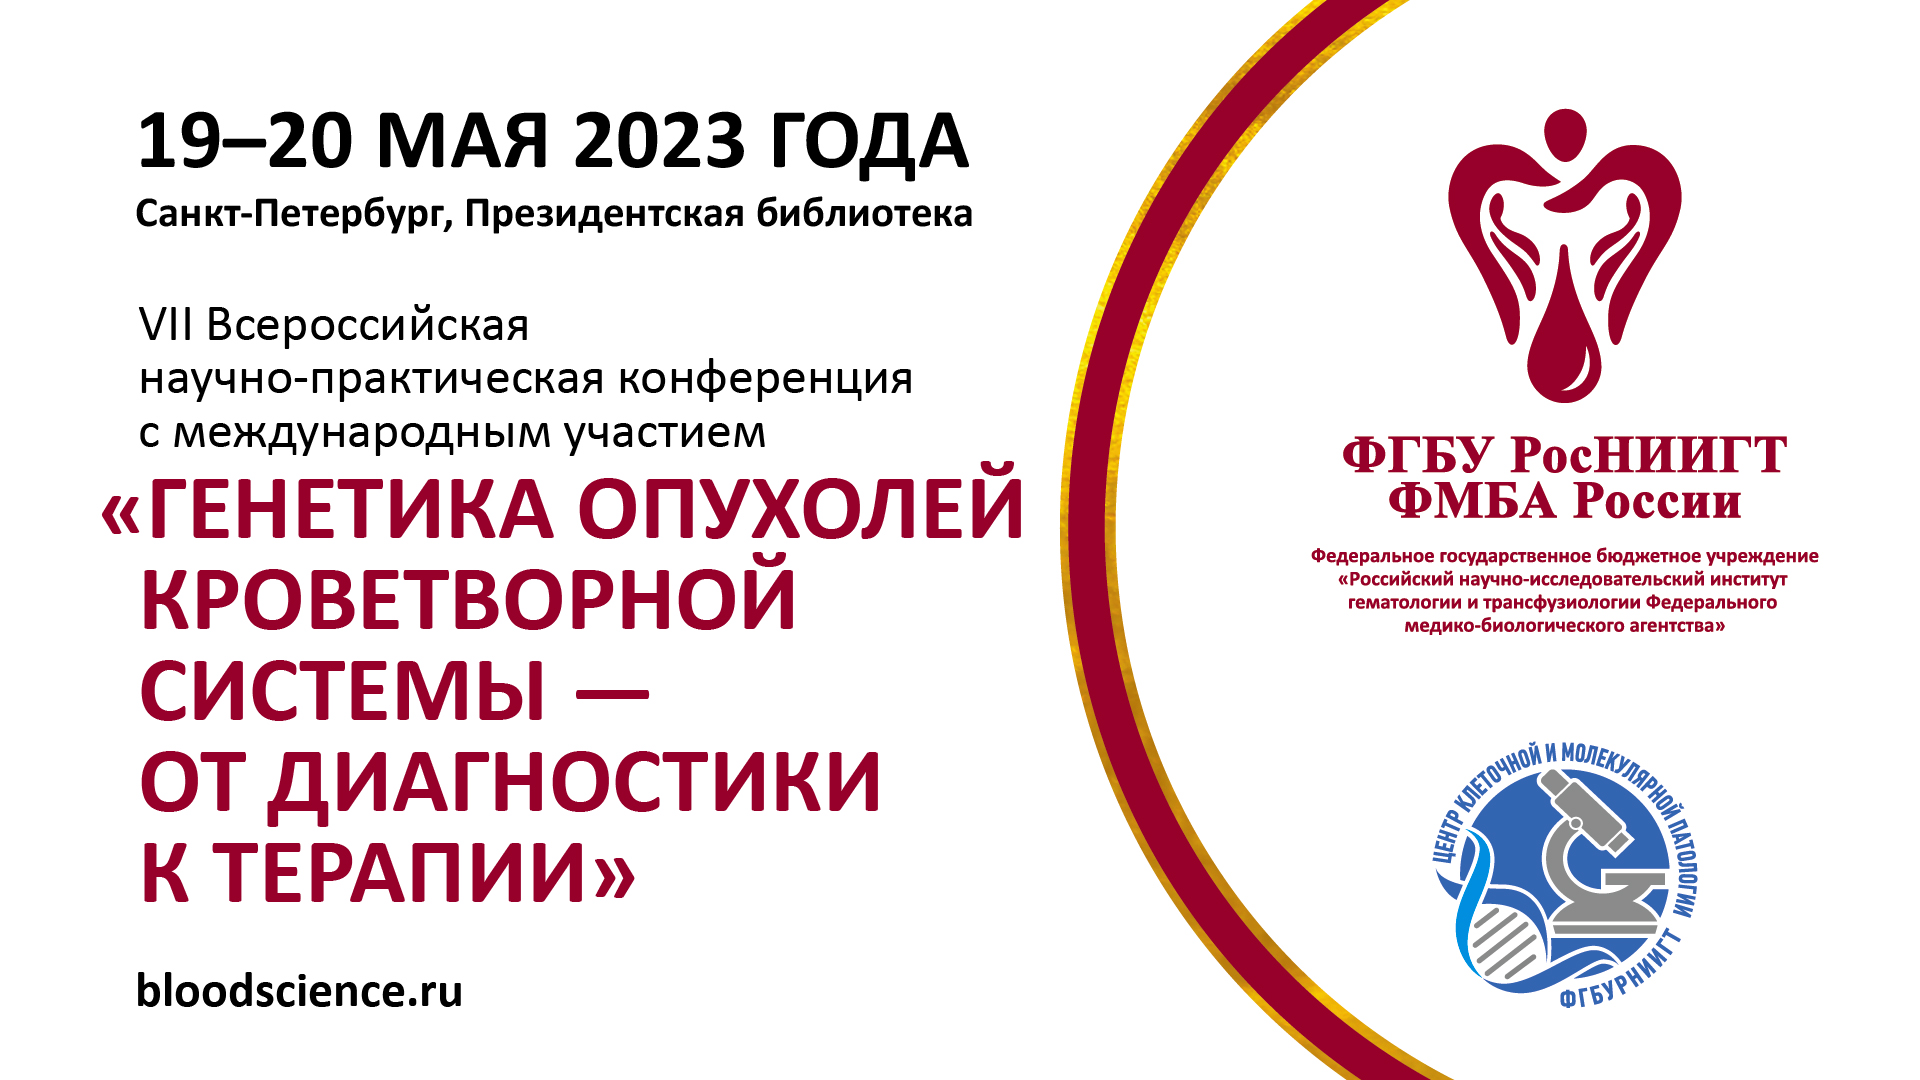 В Президентской библиотеке состоится всероссийская научно-практическая конференция врачей-генетиков